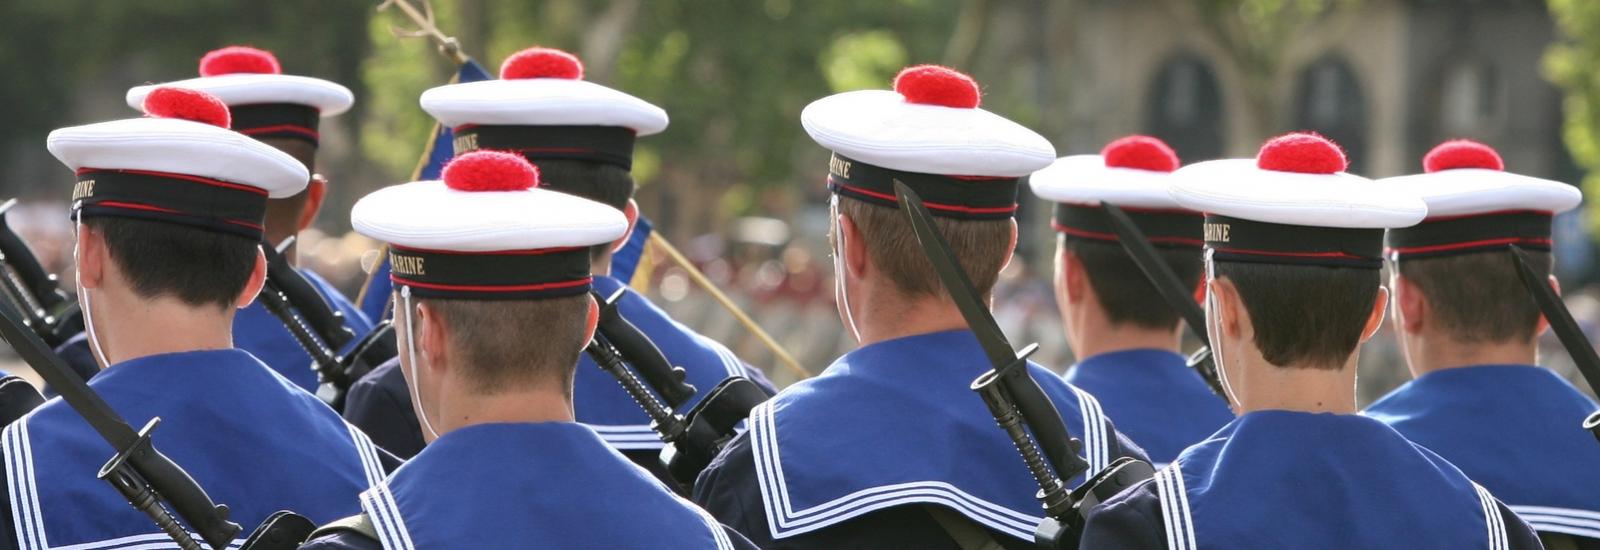 La Marine nationale française compte 39 000 marins.